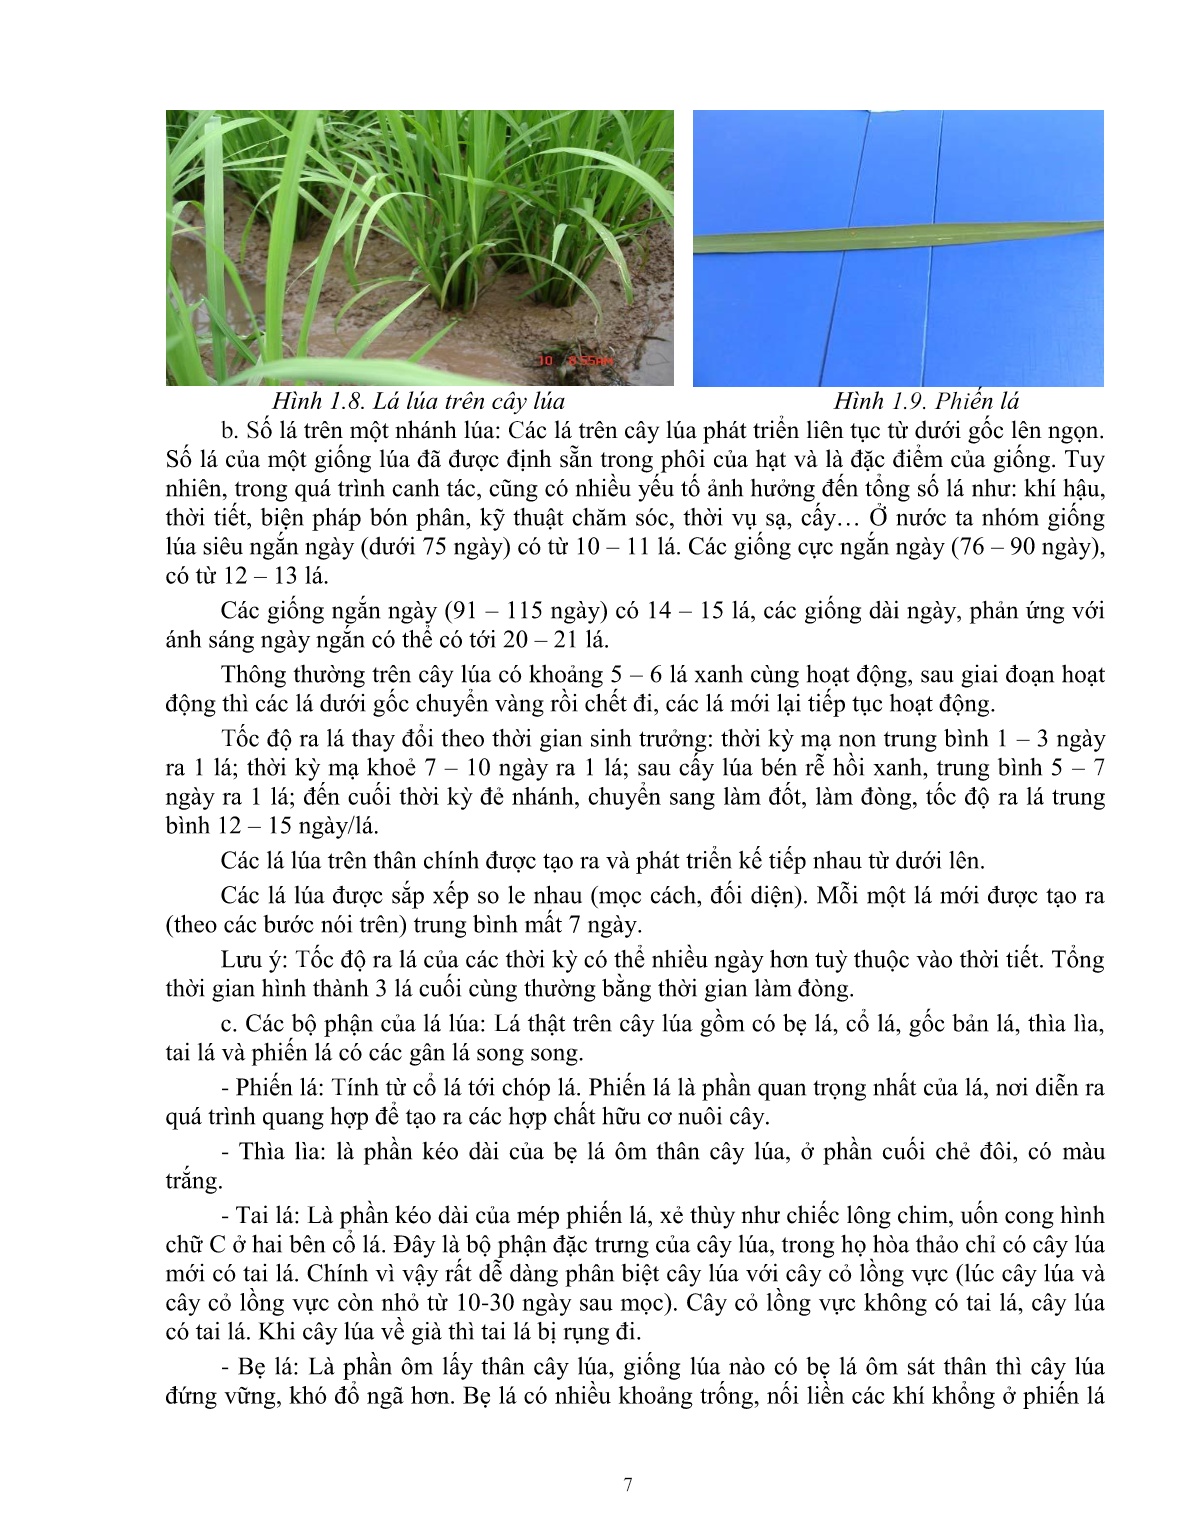 Giáo trình mô đun Chuẩn bị các điều kiện để trồng lúa (Trình độ: Đào tạo dưới 03 tháng) trang 8